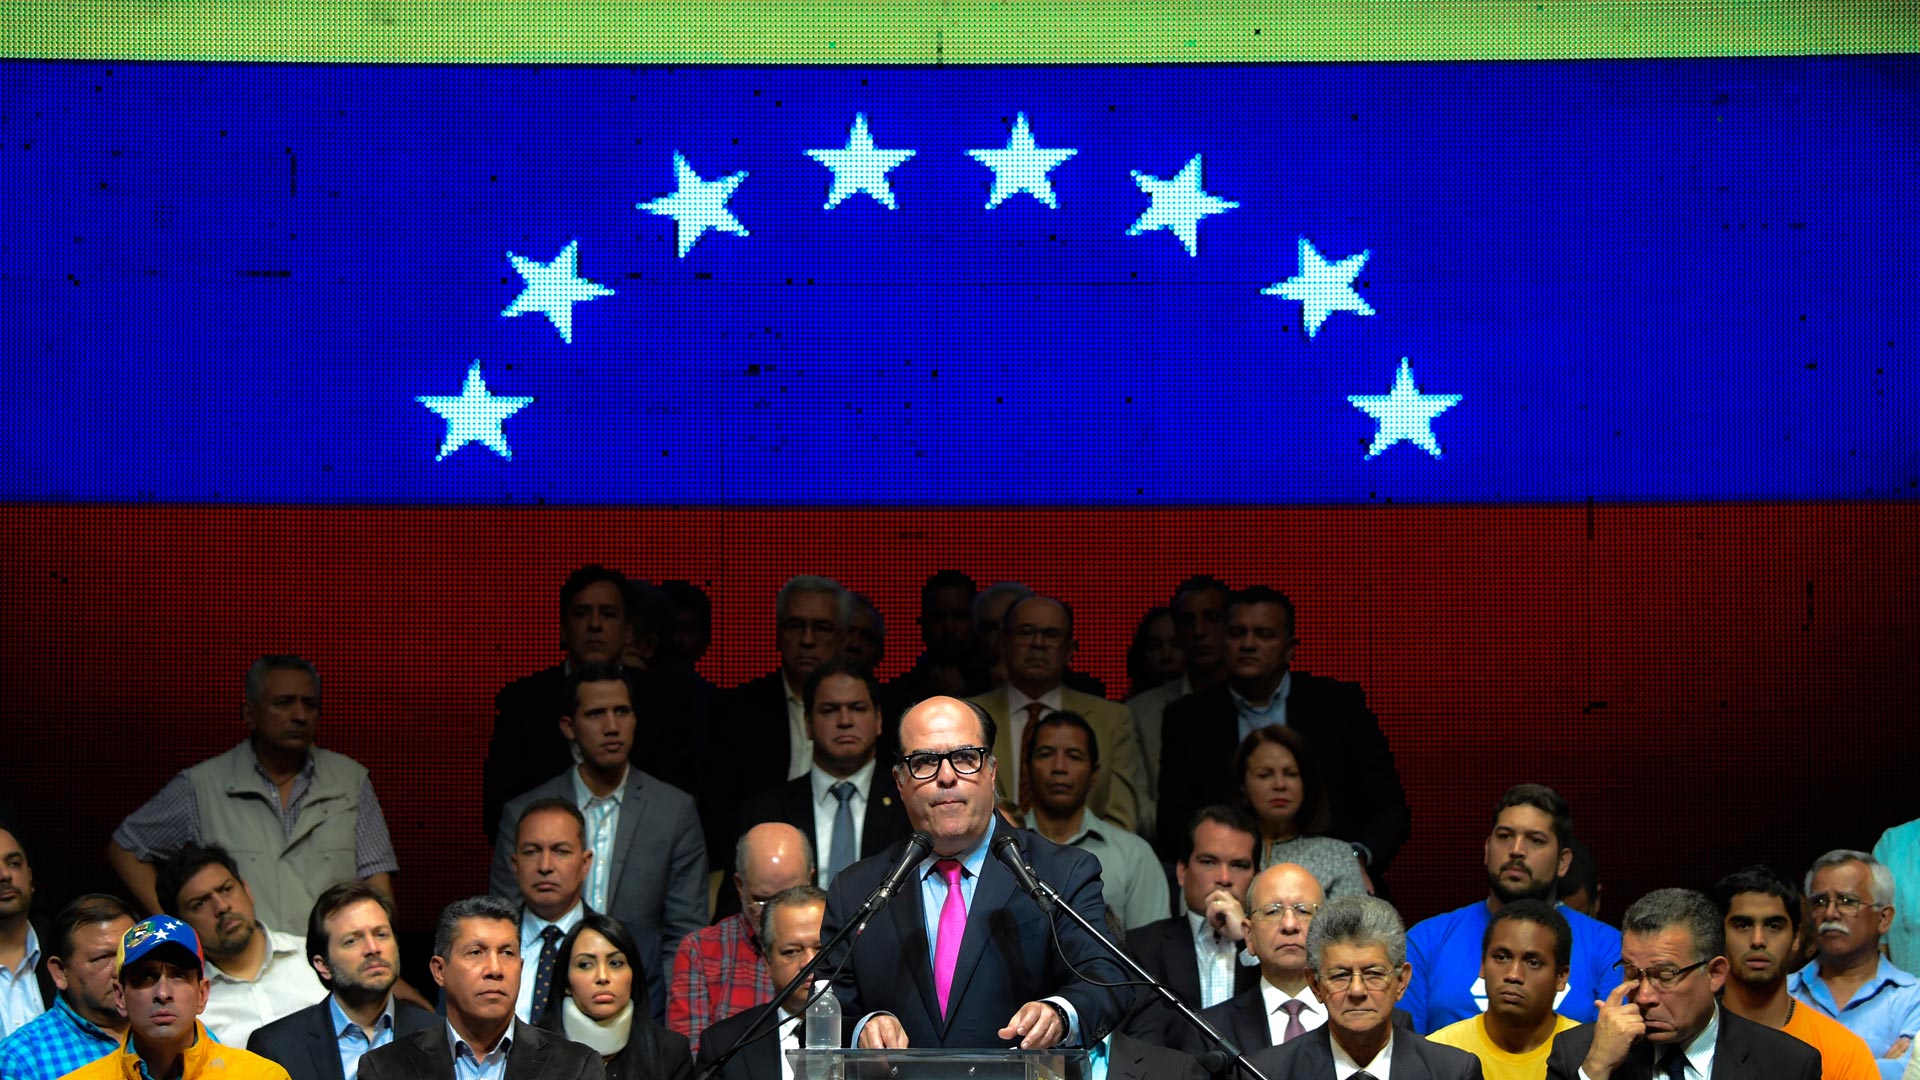 La oposición venezolana realizará un plebiscito simbólico para rechazar a Maduro